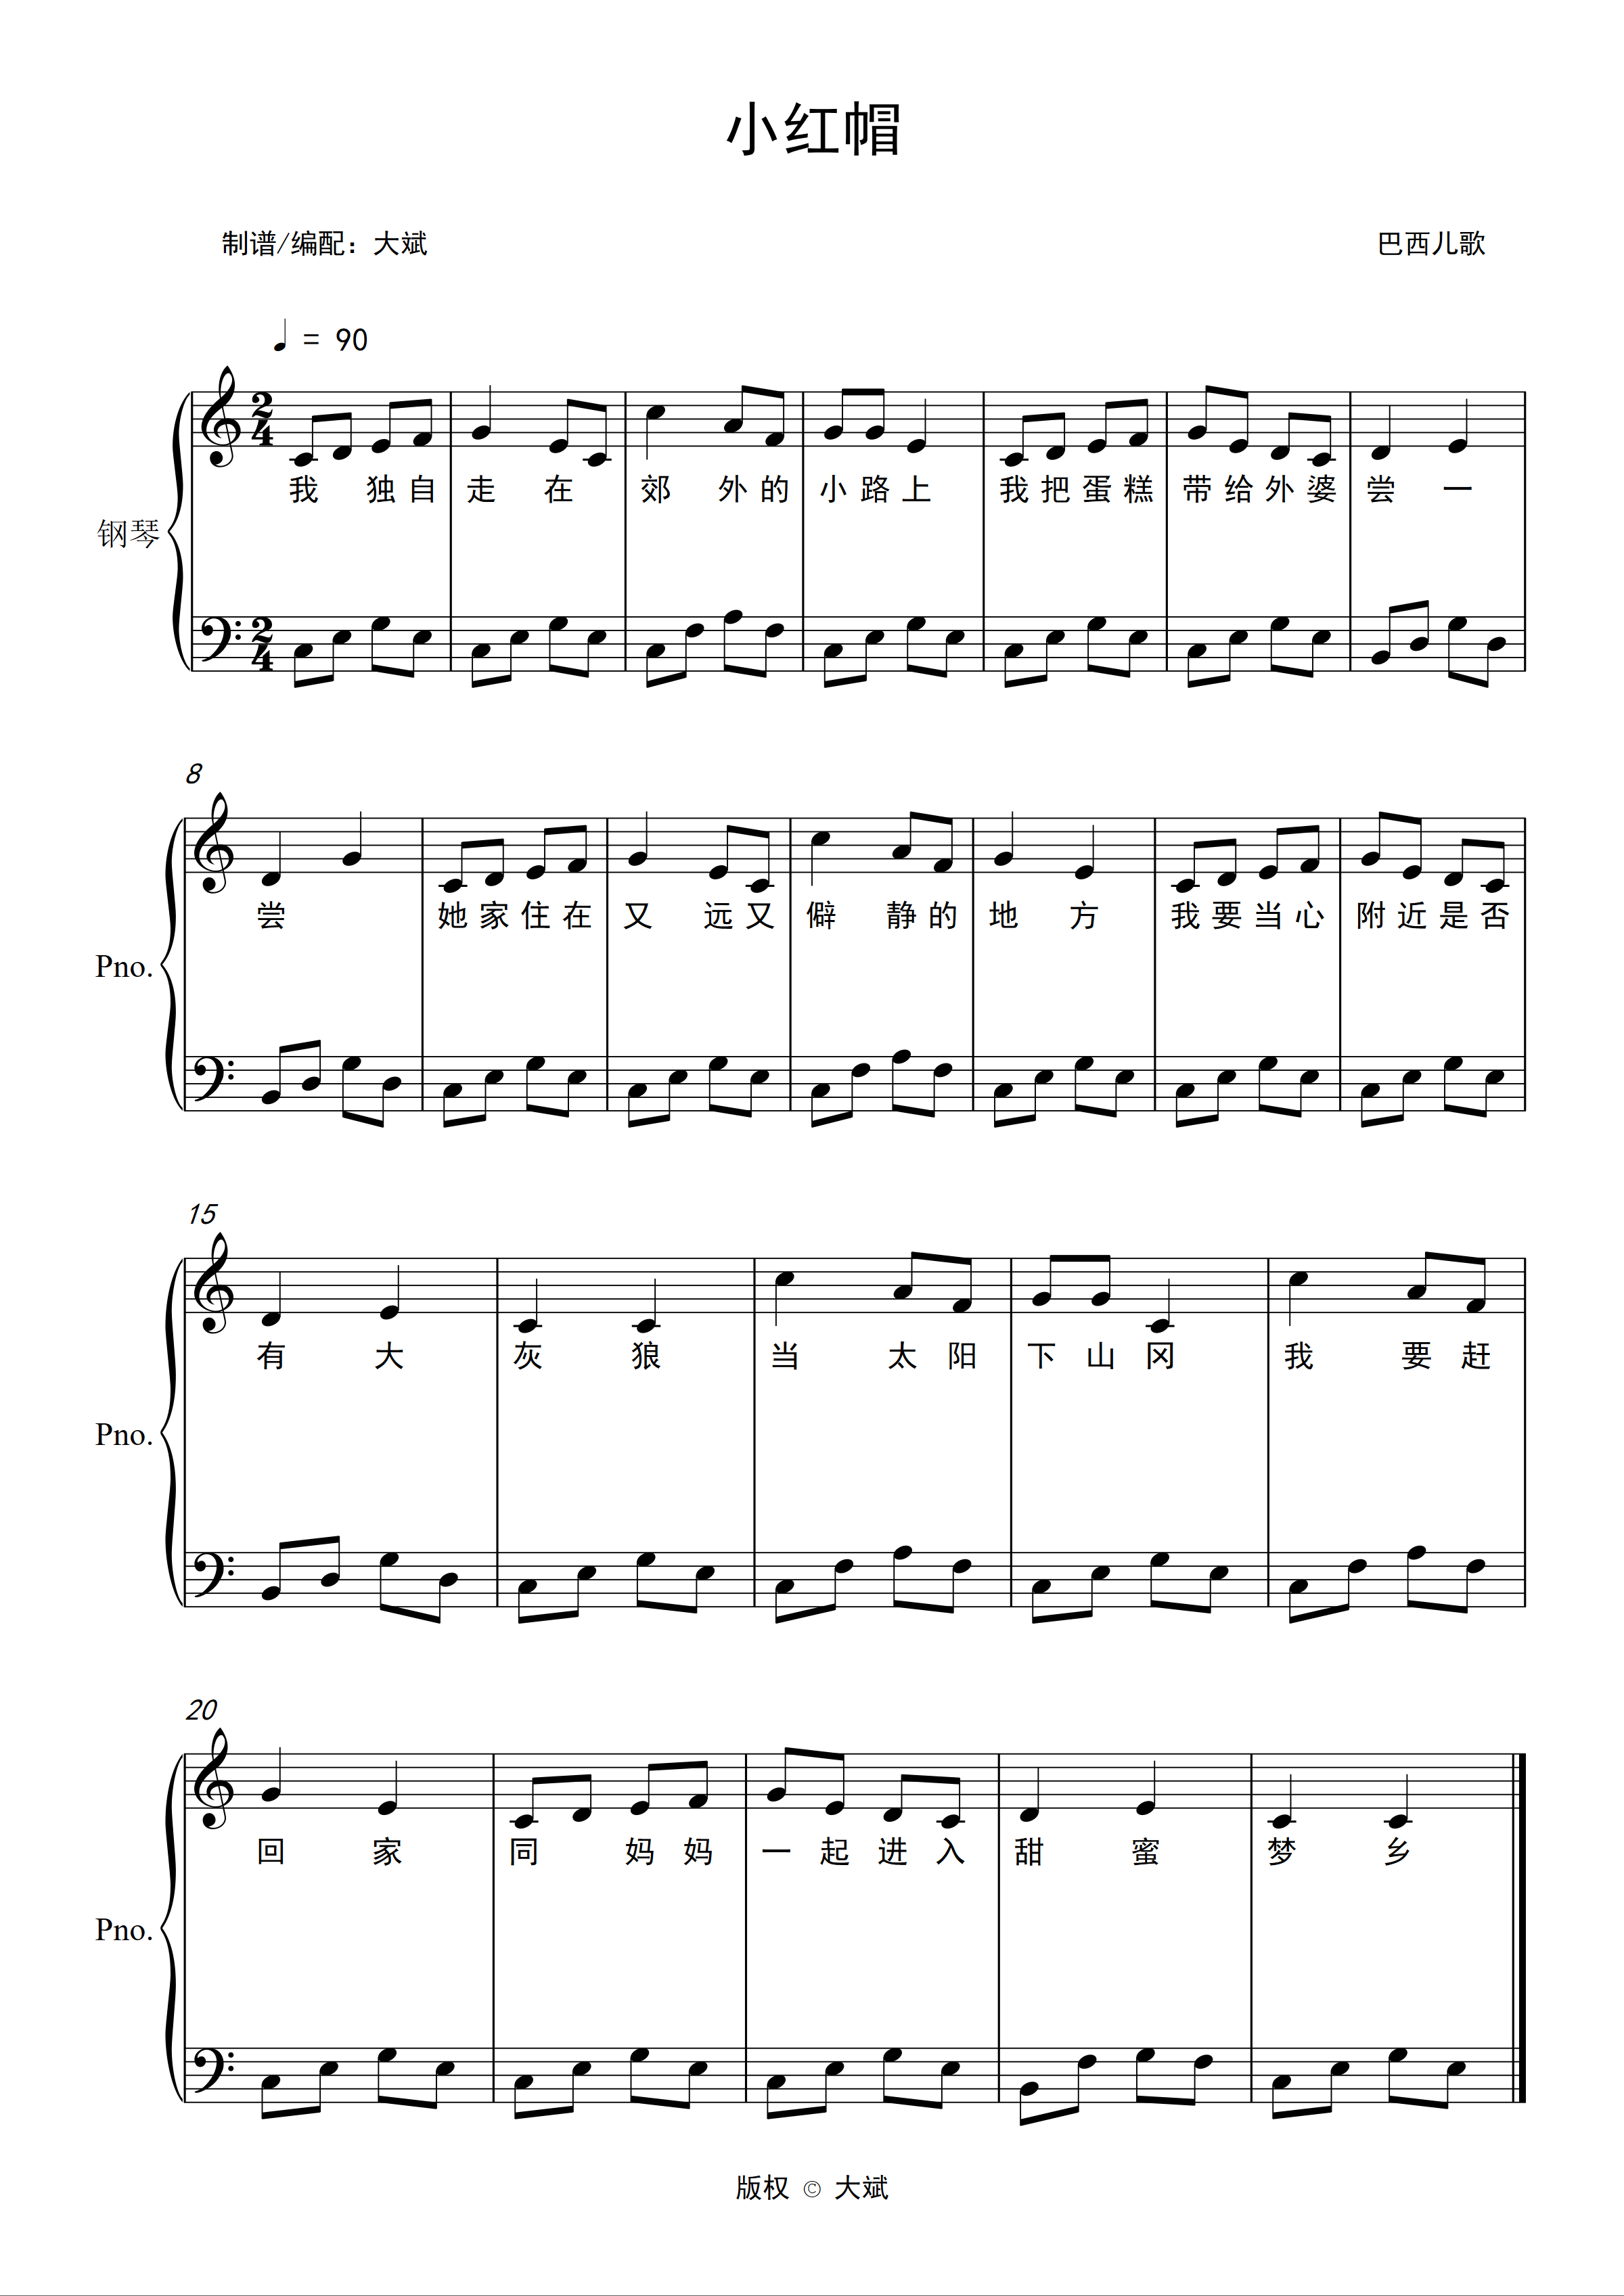 小红帽五线谱预览1-钢琴谱文件（五线谱、双手简谱、数字谱、Midi、PDF）免费下载